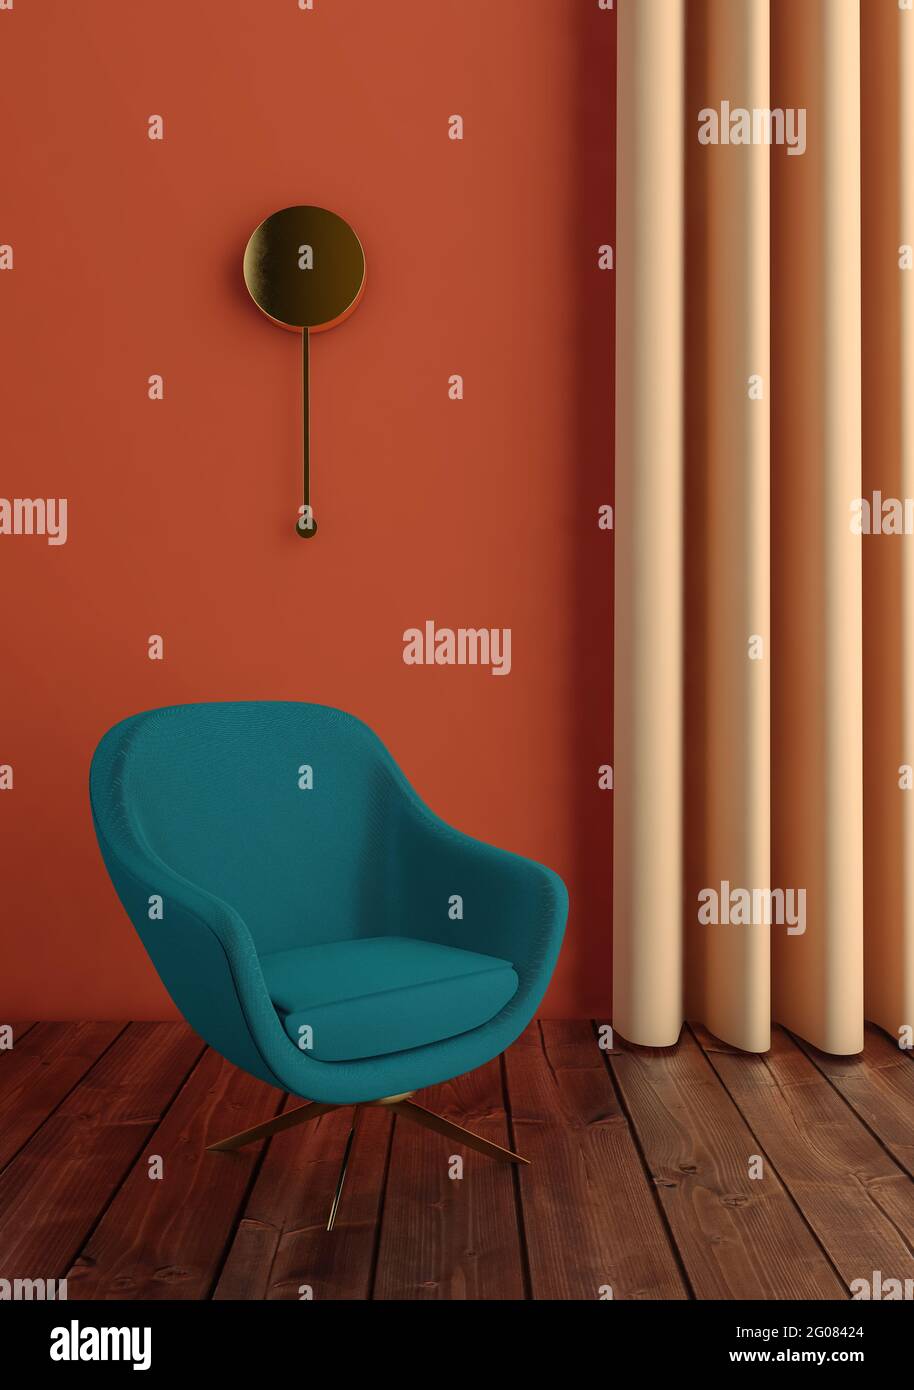 Fauteuil vert à l'intérieur sur mur orange et rideau avec Style art déco Banque D'Images